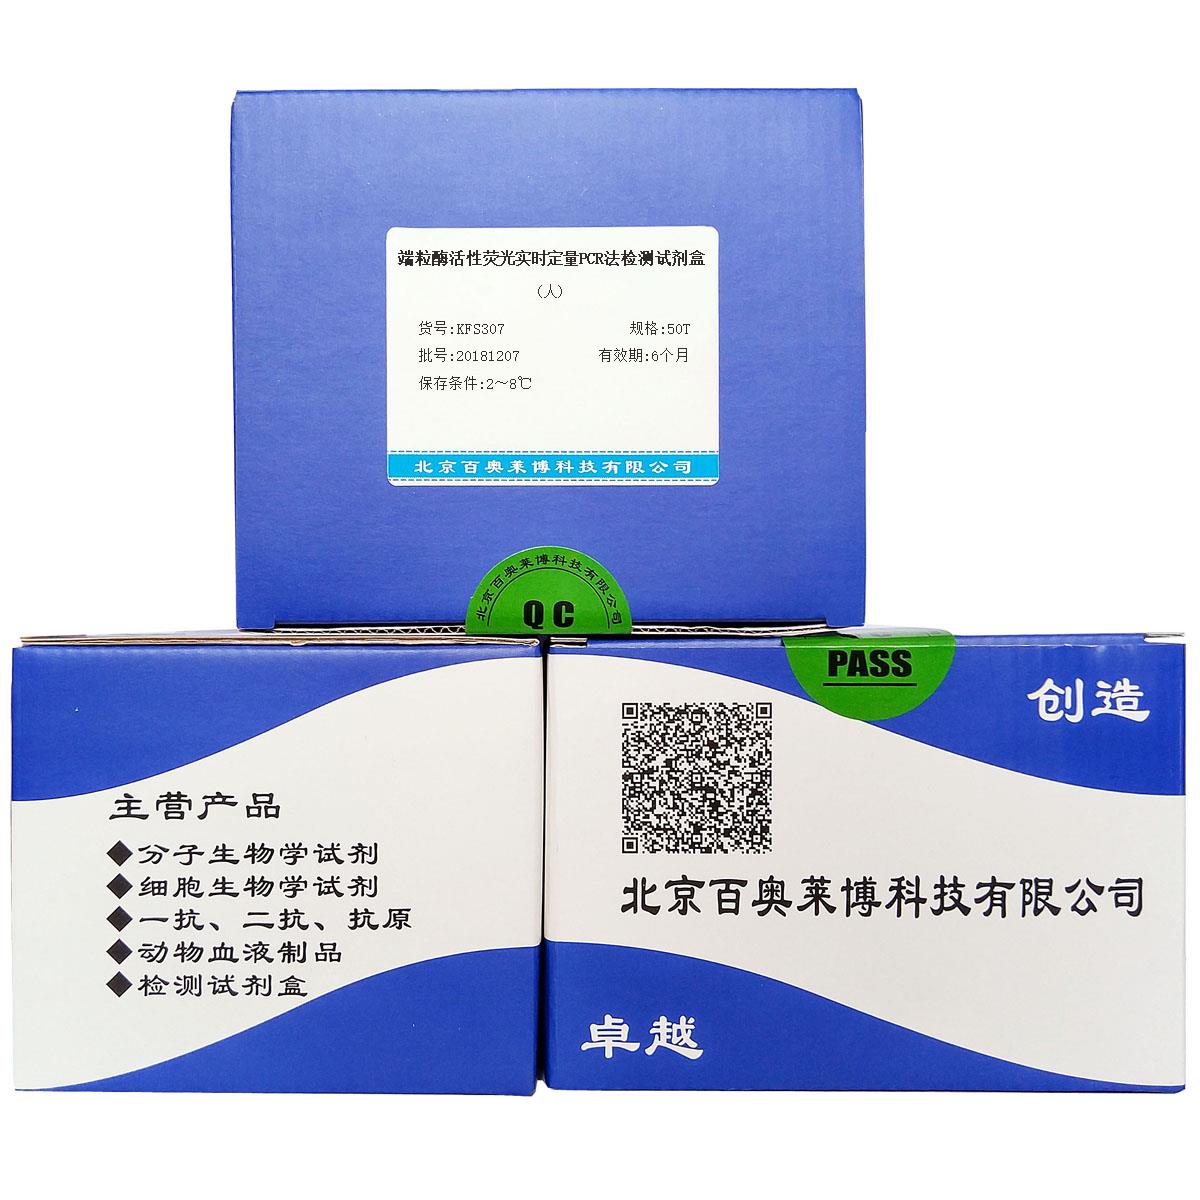 端粒酶活性荧光实时定量PCR法检测试剂盒(人)